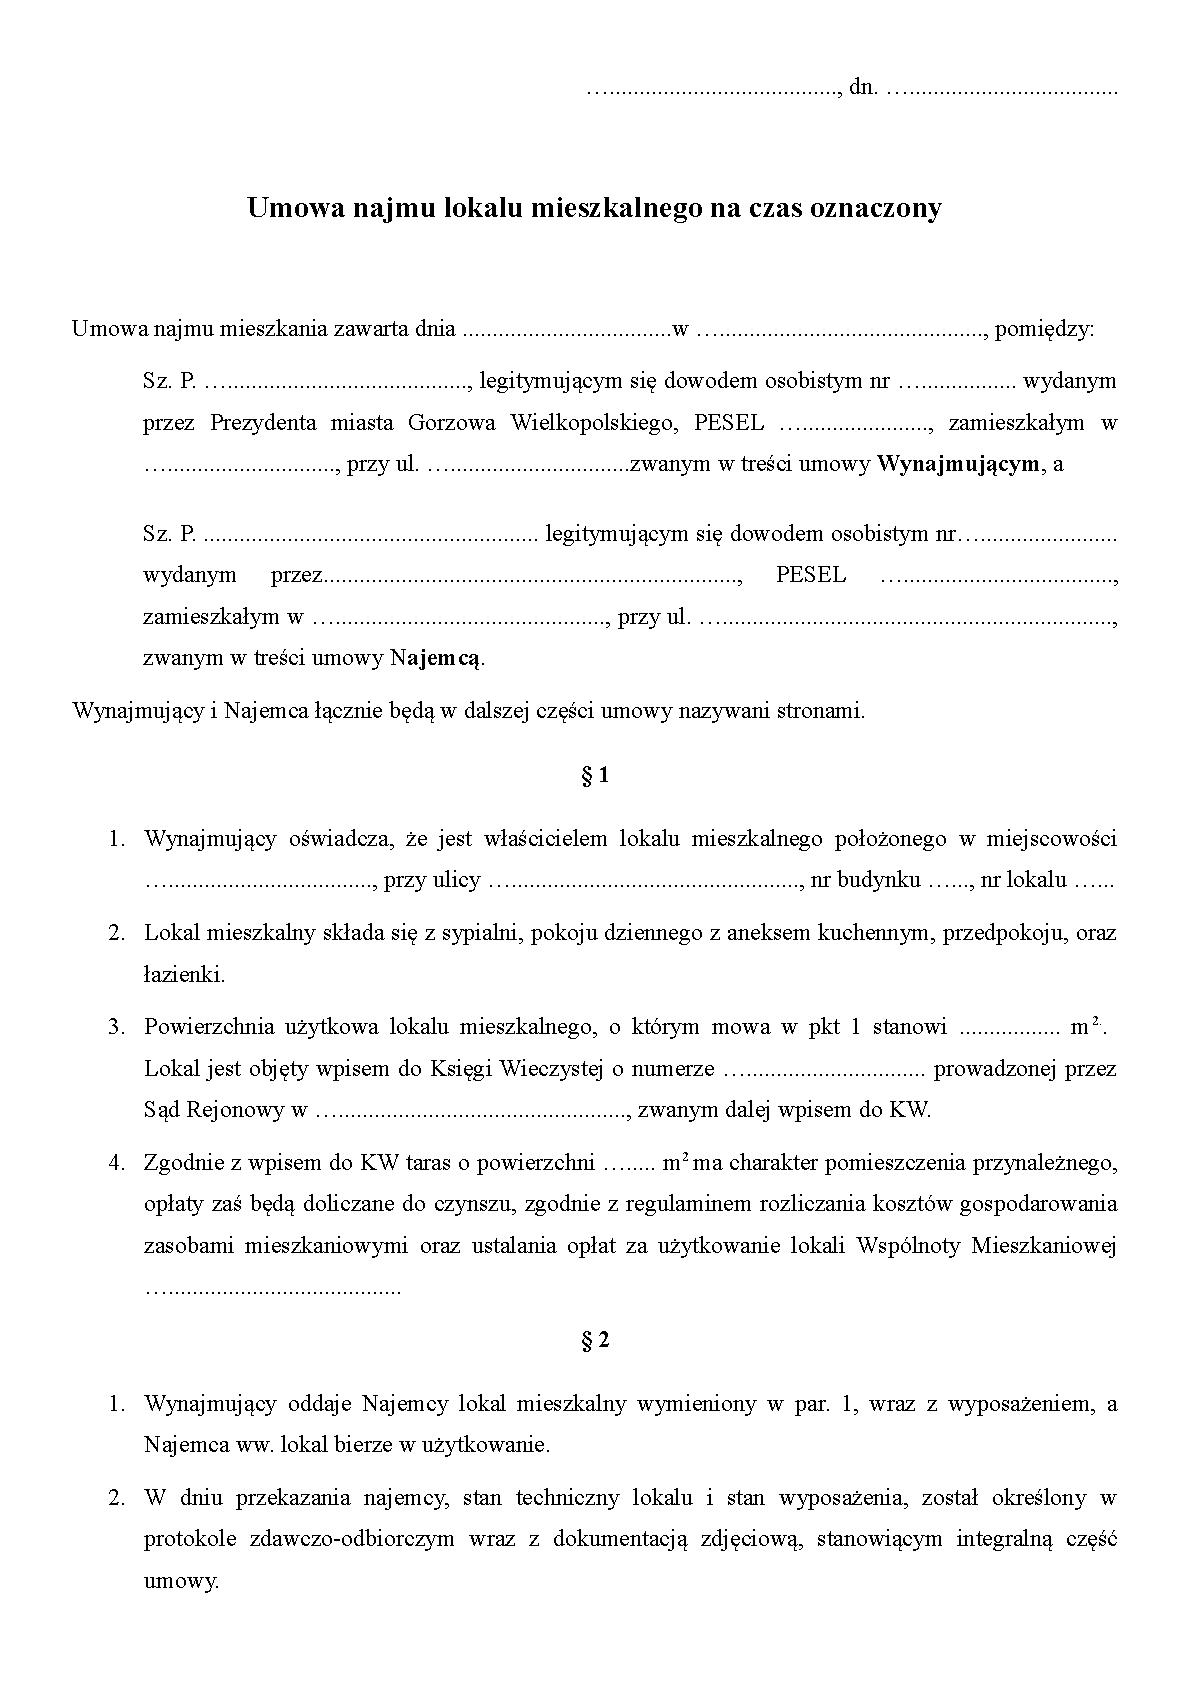 Umowa wynajmu_na forum.pdf PDF Host